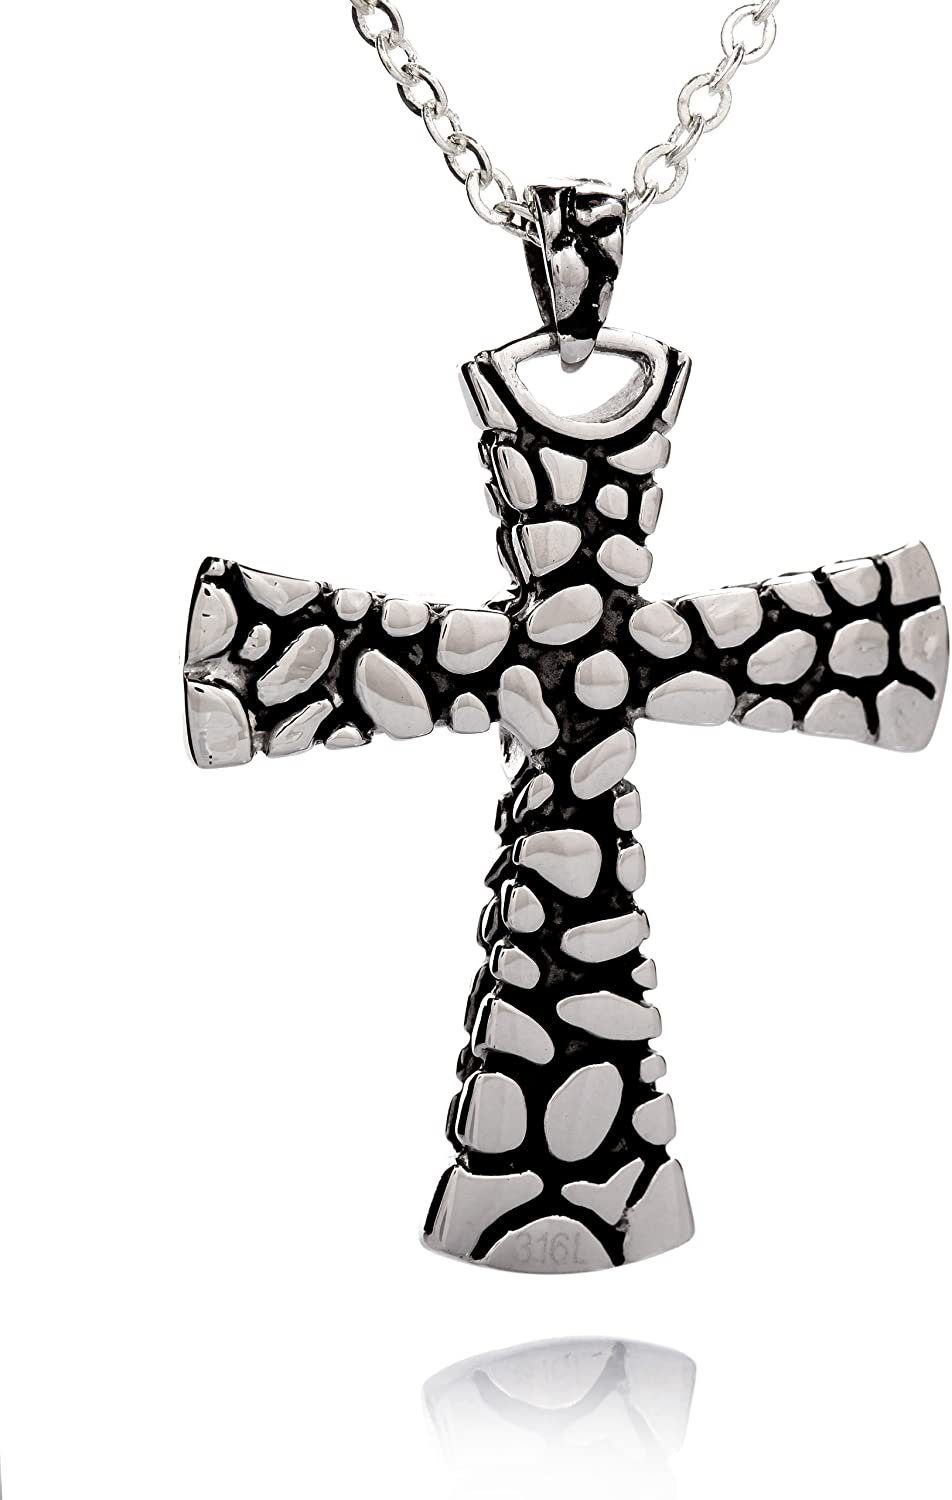 Edelstahl 45.0 Zentimeter mit mit Kreuz Kette Anhänger Kettenanhänger SLP246 - Schwarze Beschichtung EdelstahlKette Karisma